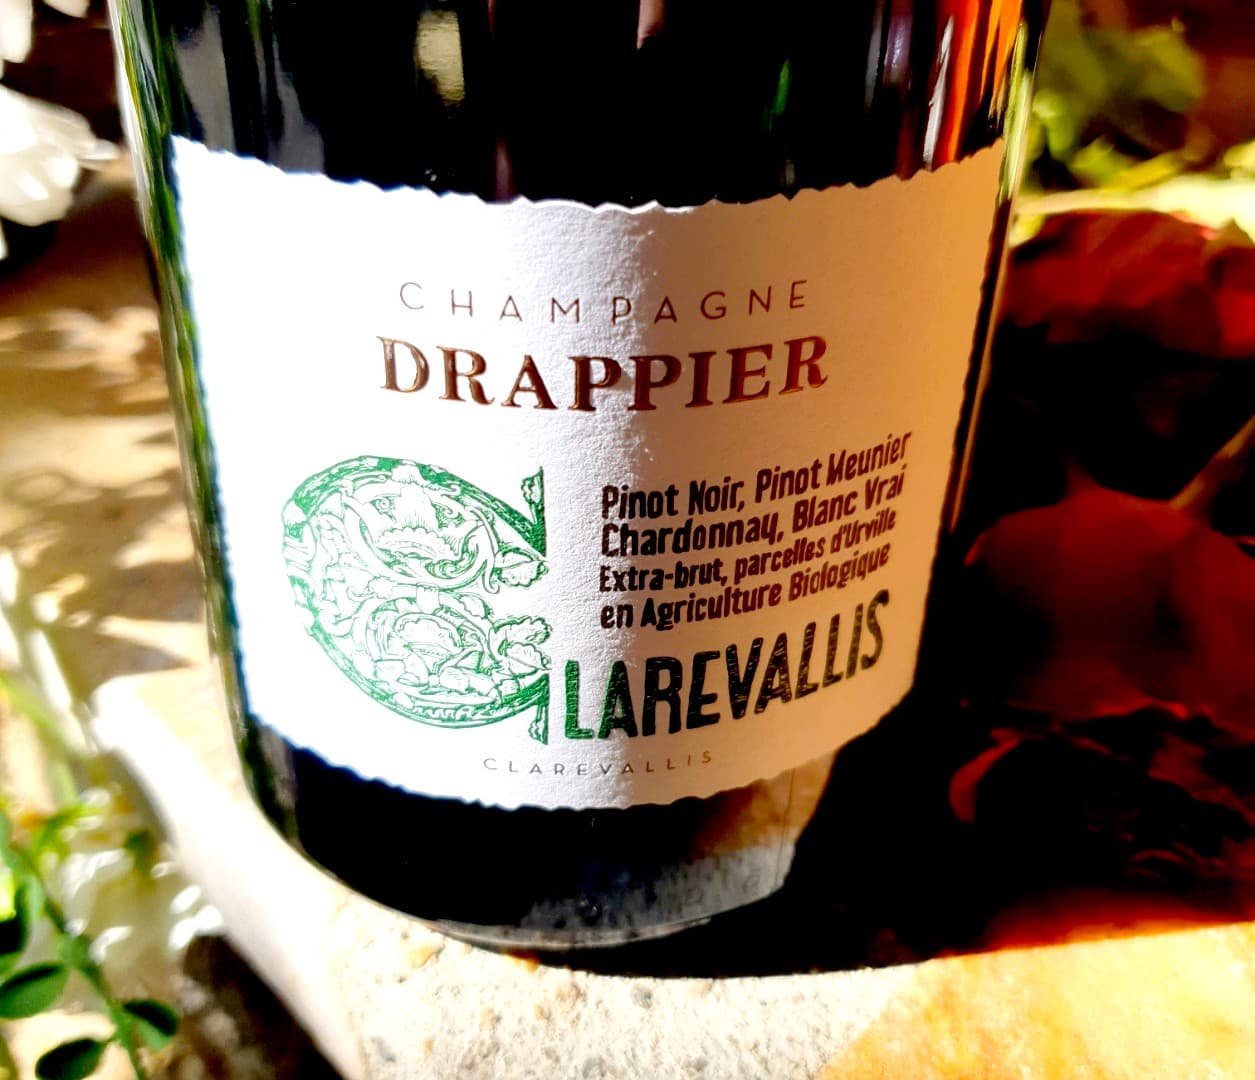 Champagne Drappier Clarevallis, l’expression d’une nature généreuse